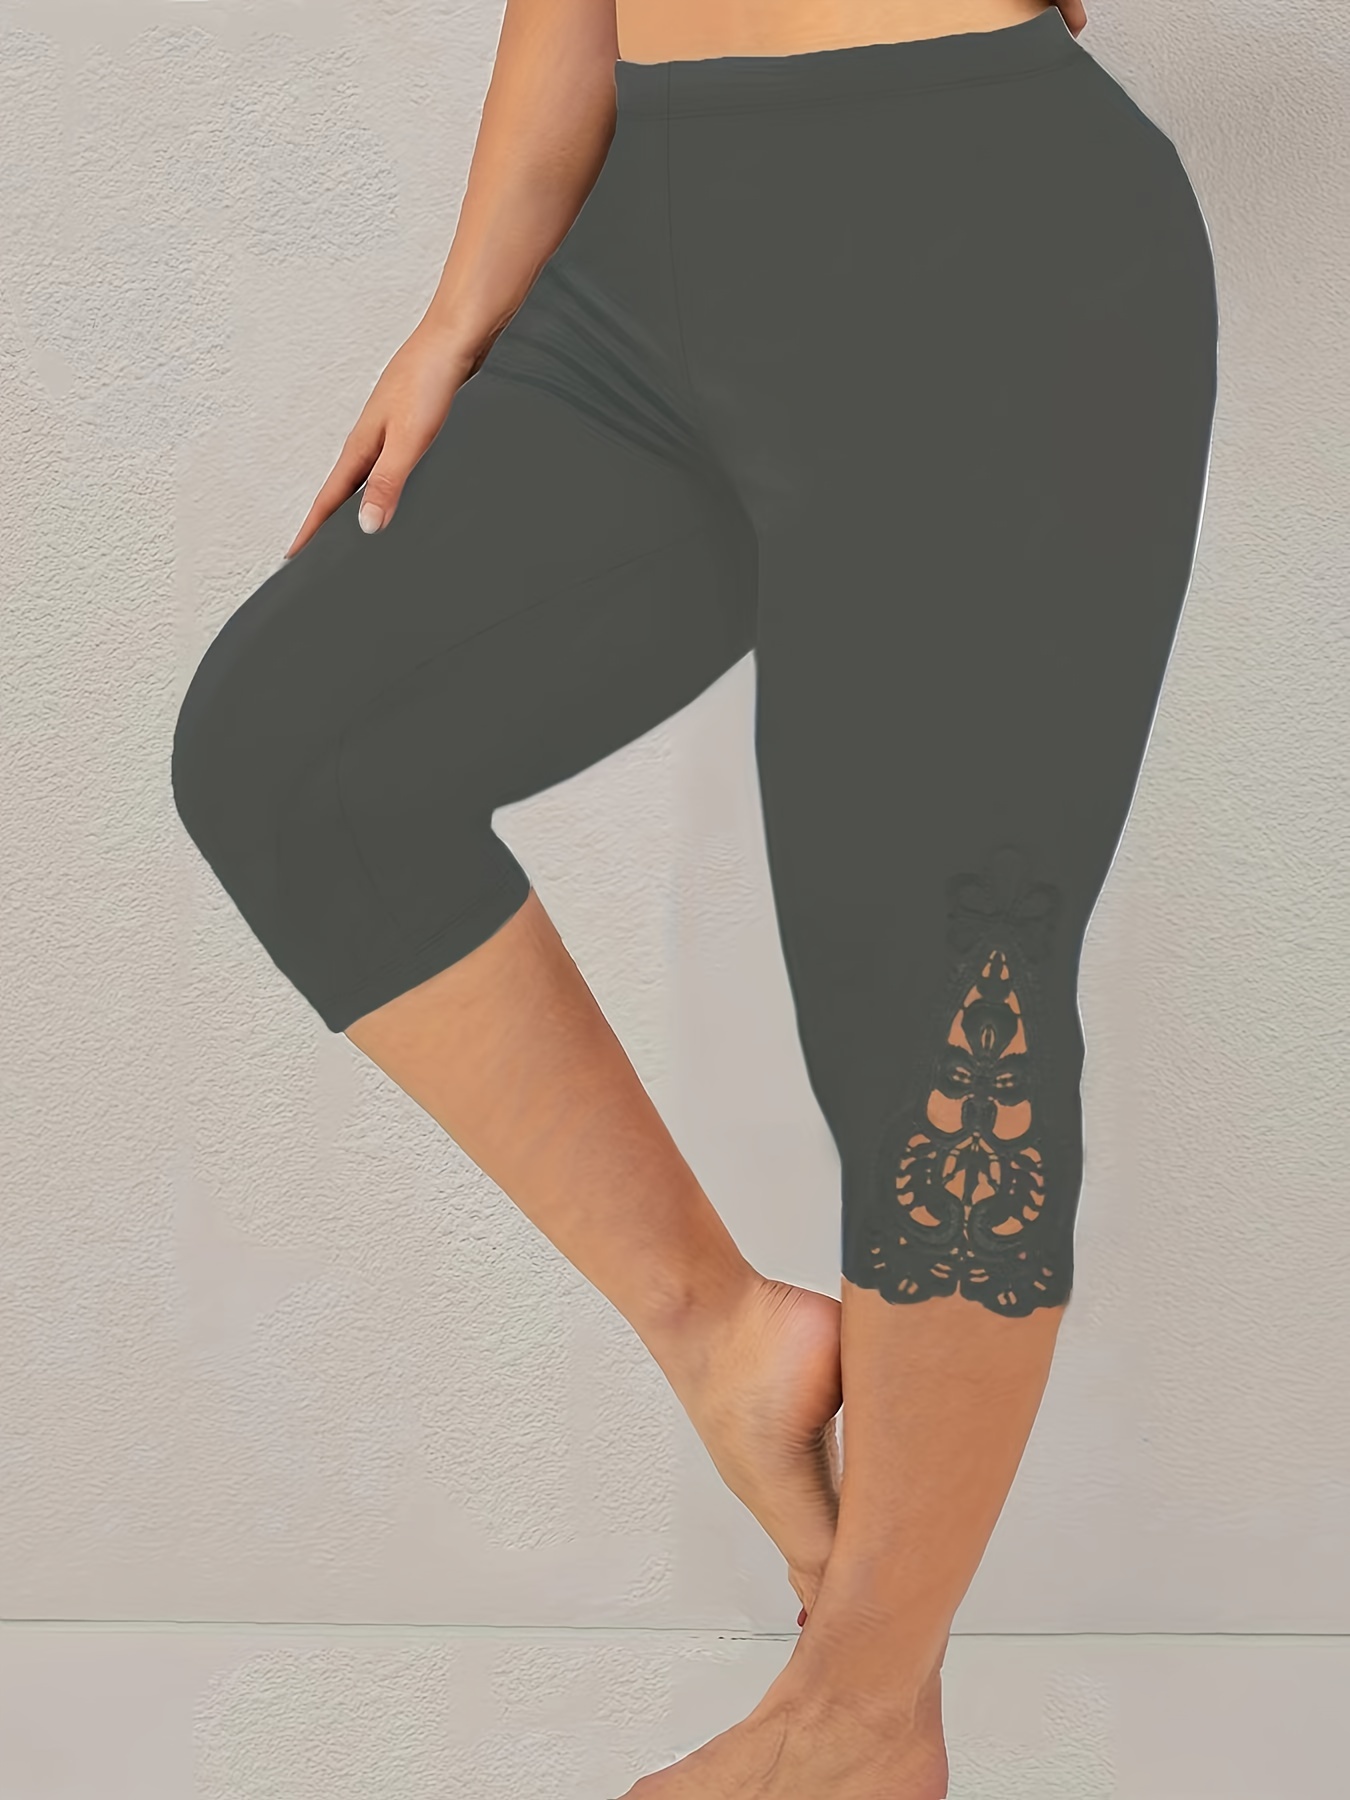 Black or grey Plus Size Casual Capri Leggings, Women's Plus Contrast Lace  Elastic High Waist Skinny Capri Leggings